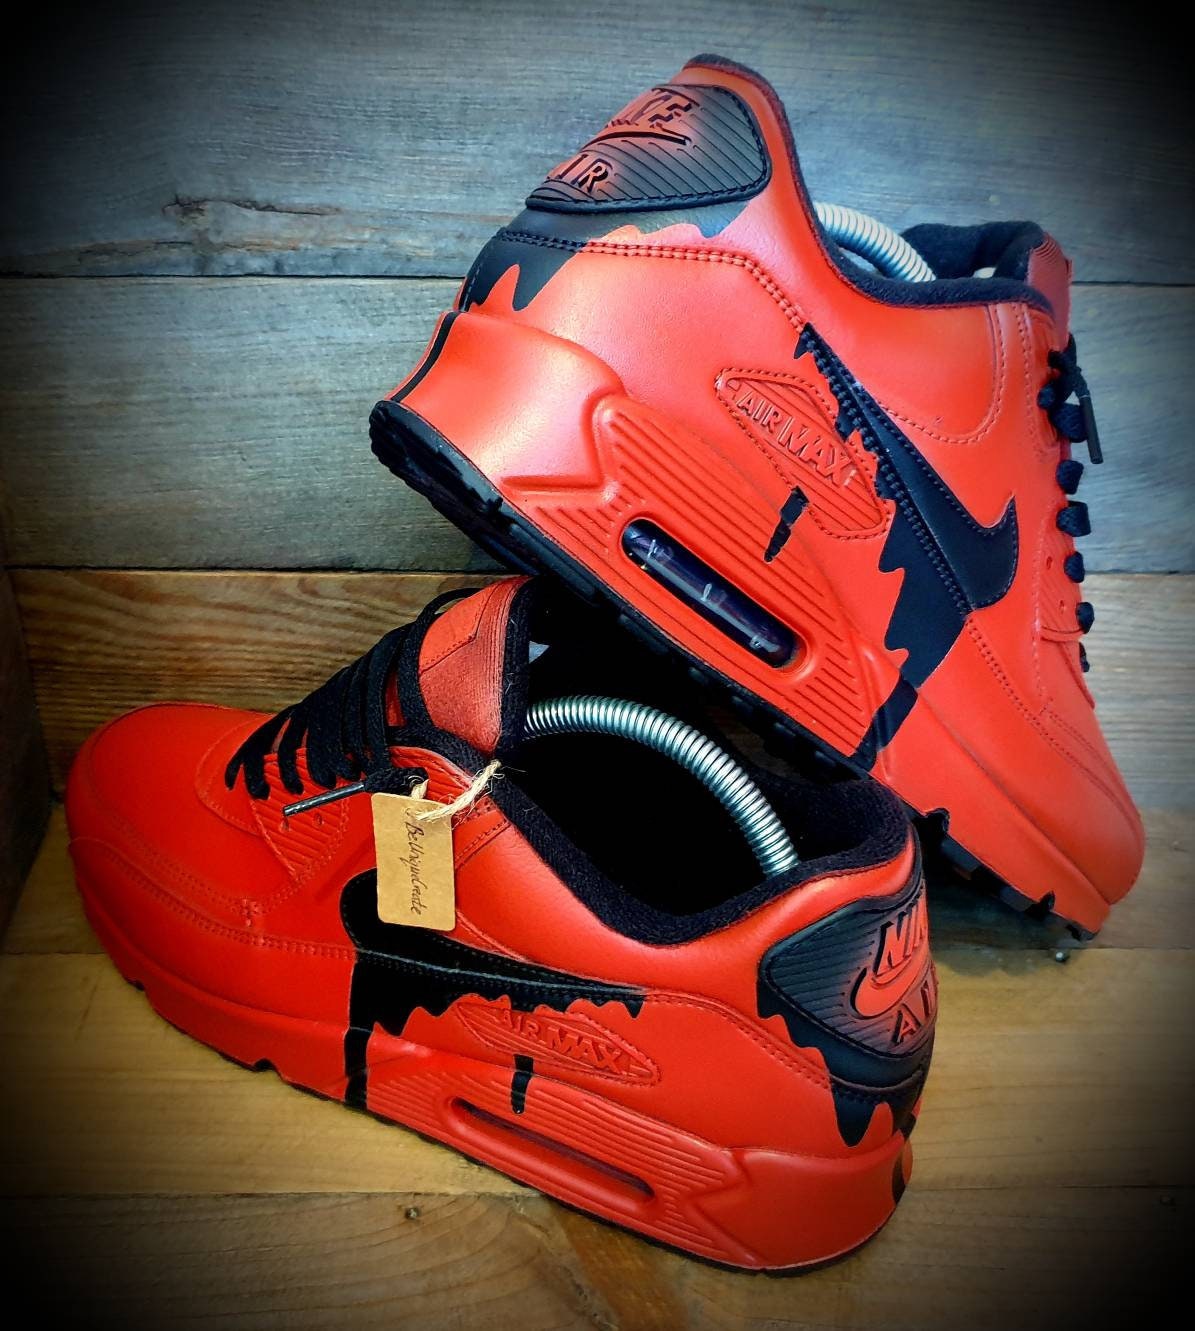 Custom Painted Air Max 90/Sneakers/Shoes/Kicks/Premium/Personalised/Classic Drip-Red